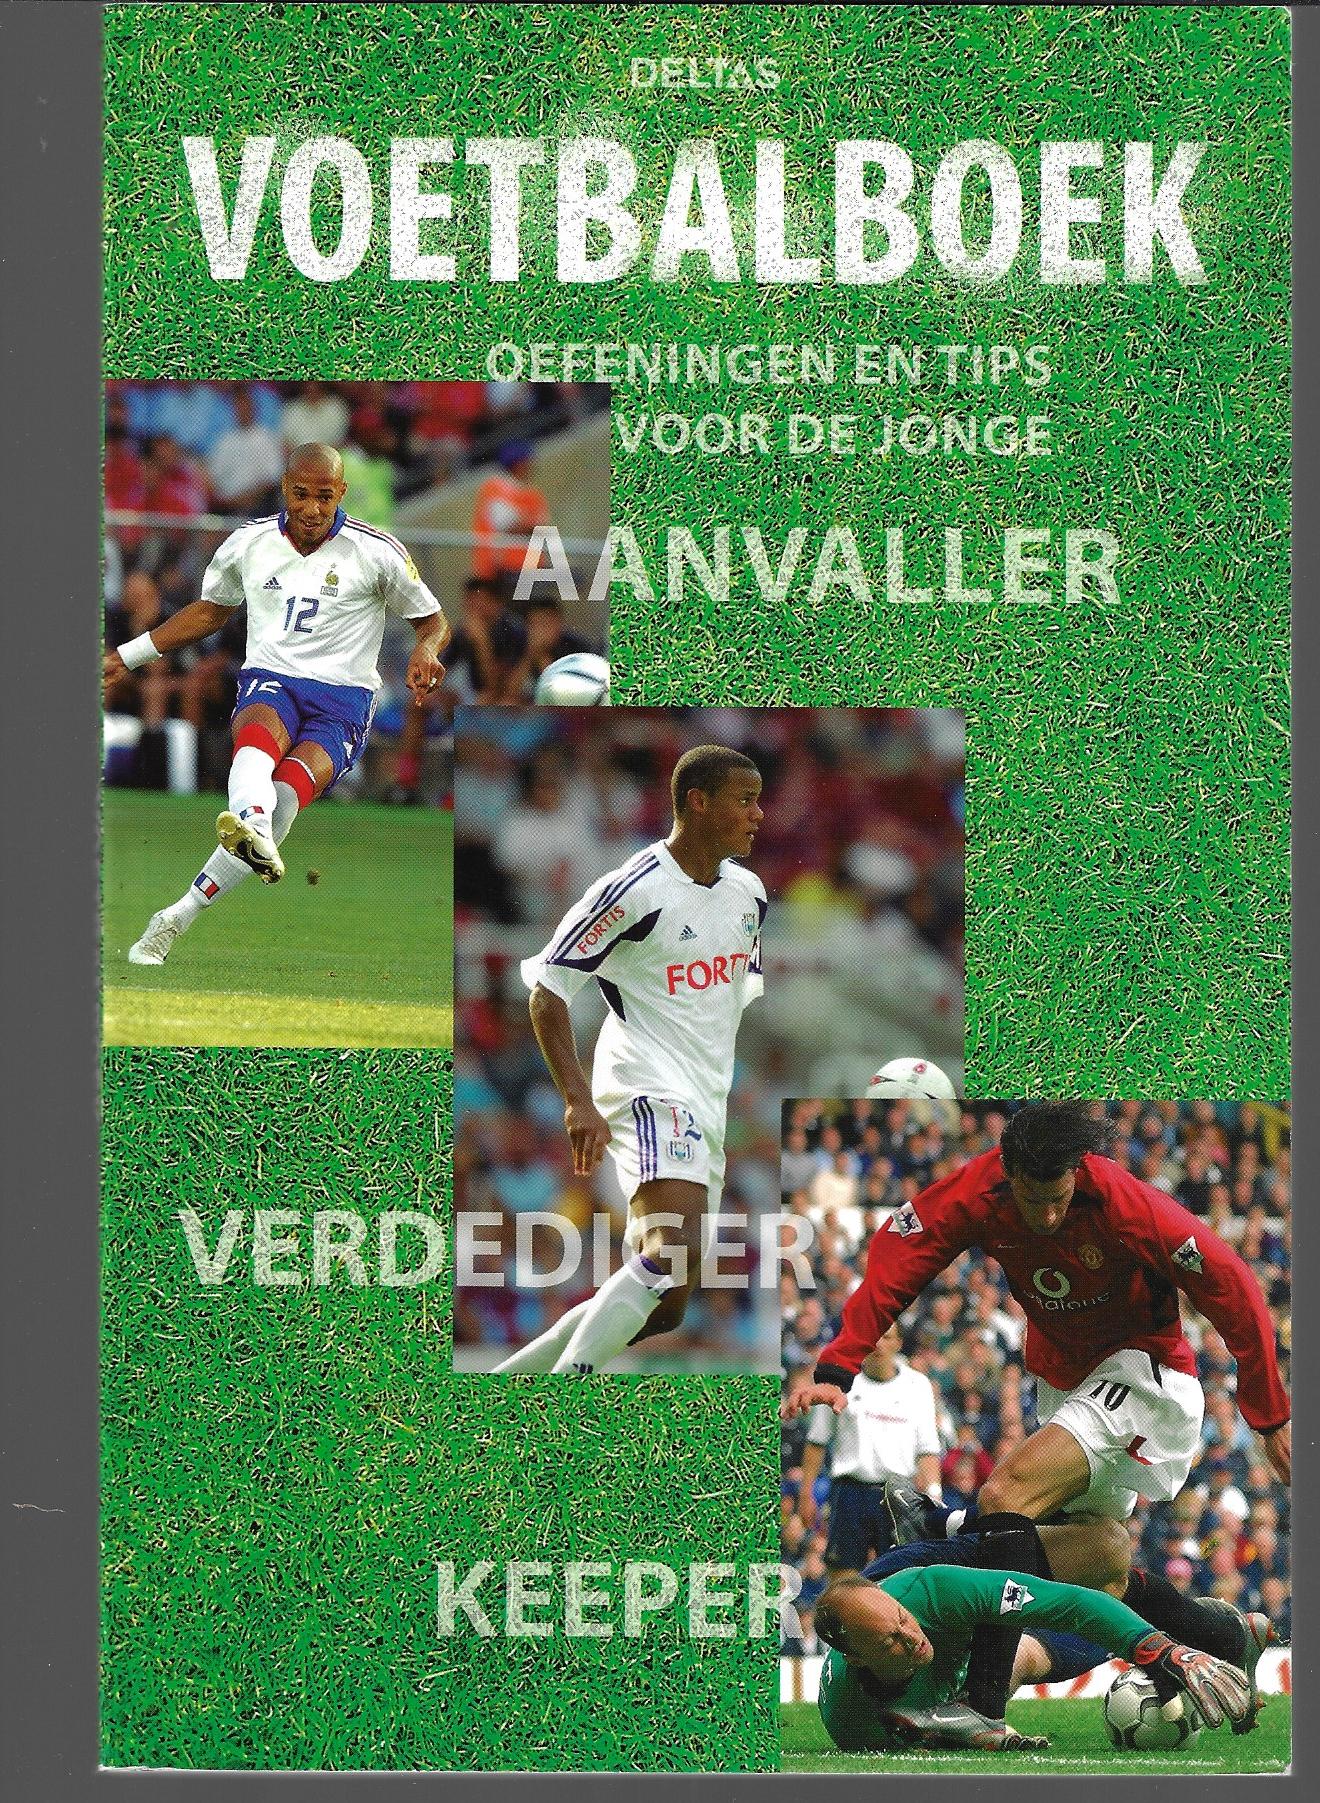 Fairclough, Paul - Voetbalboek -Oefeningen en tips voor de jonge aanvaller verdediger keeper